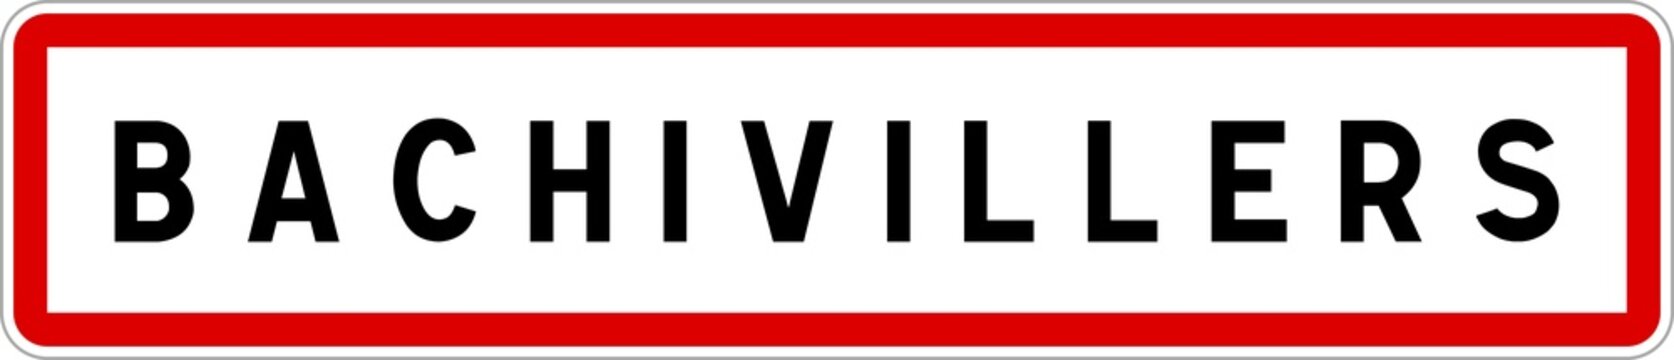 Panneau entrée ville agglomération Bachivillers / Town entrance sign Bachivillers